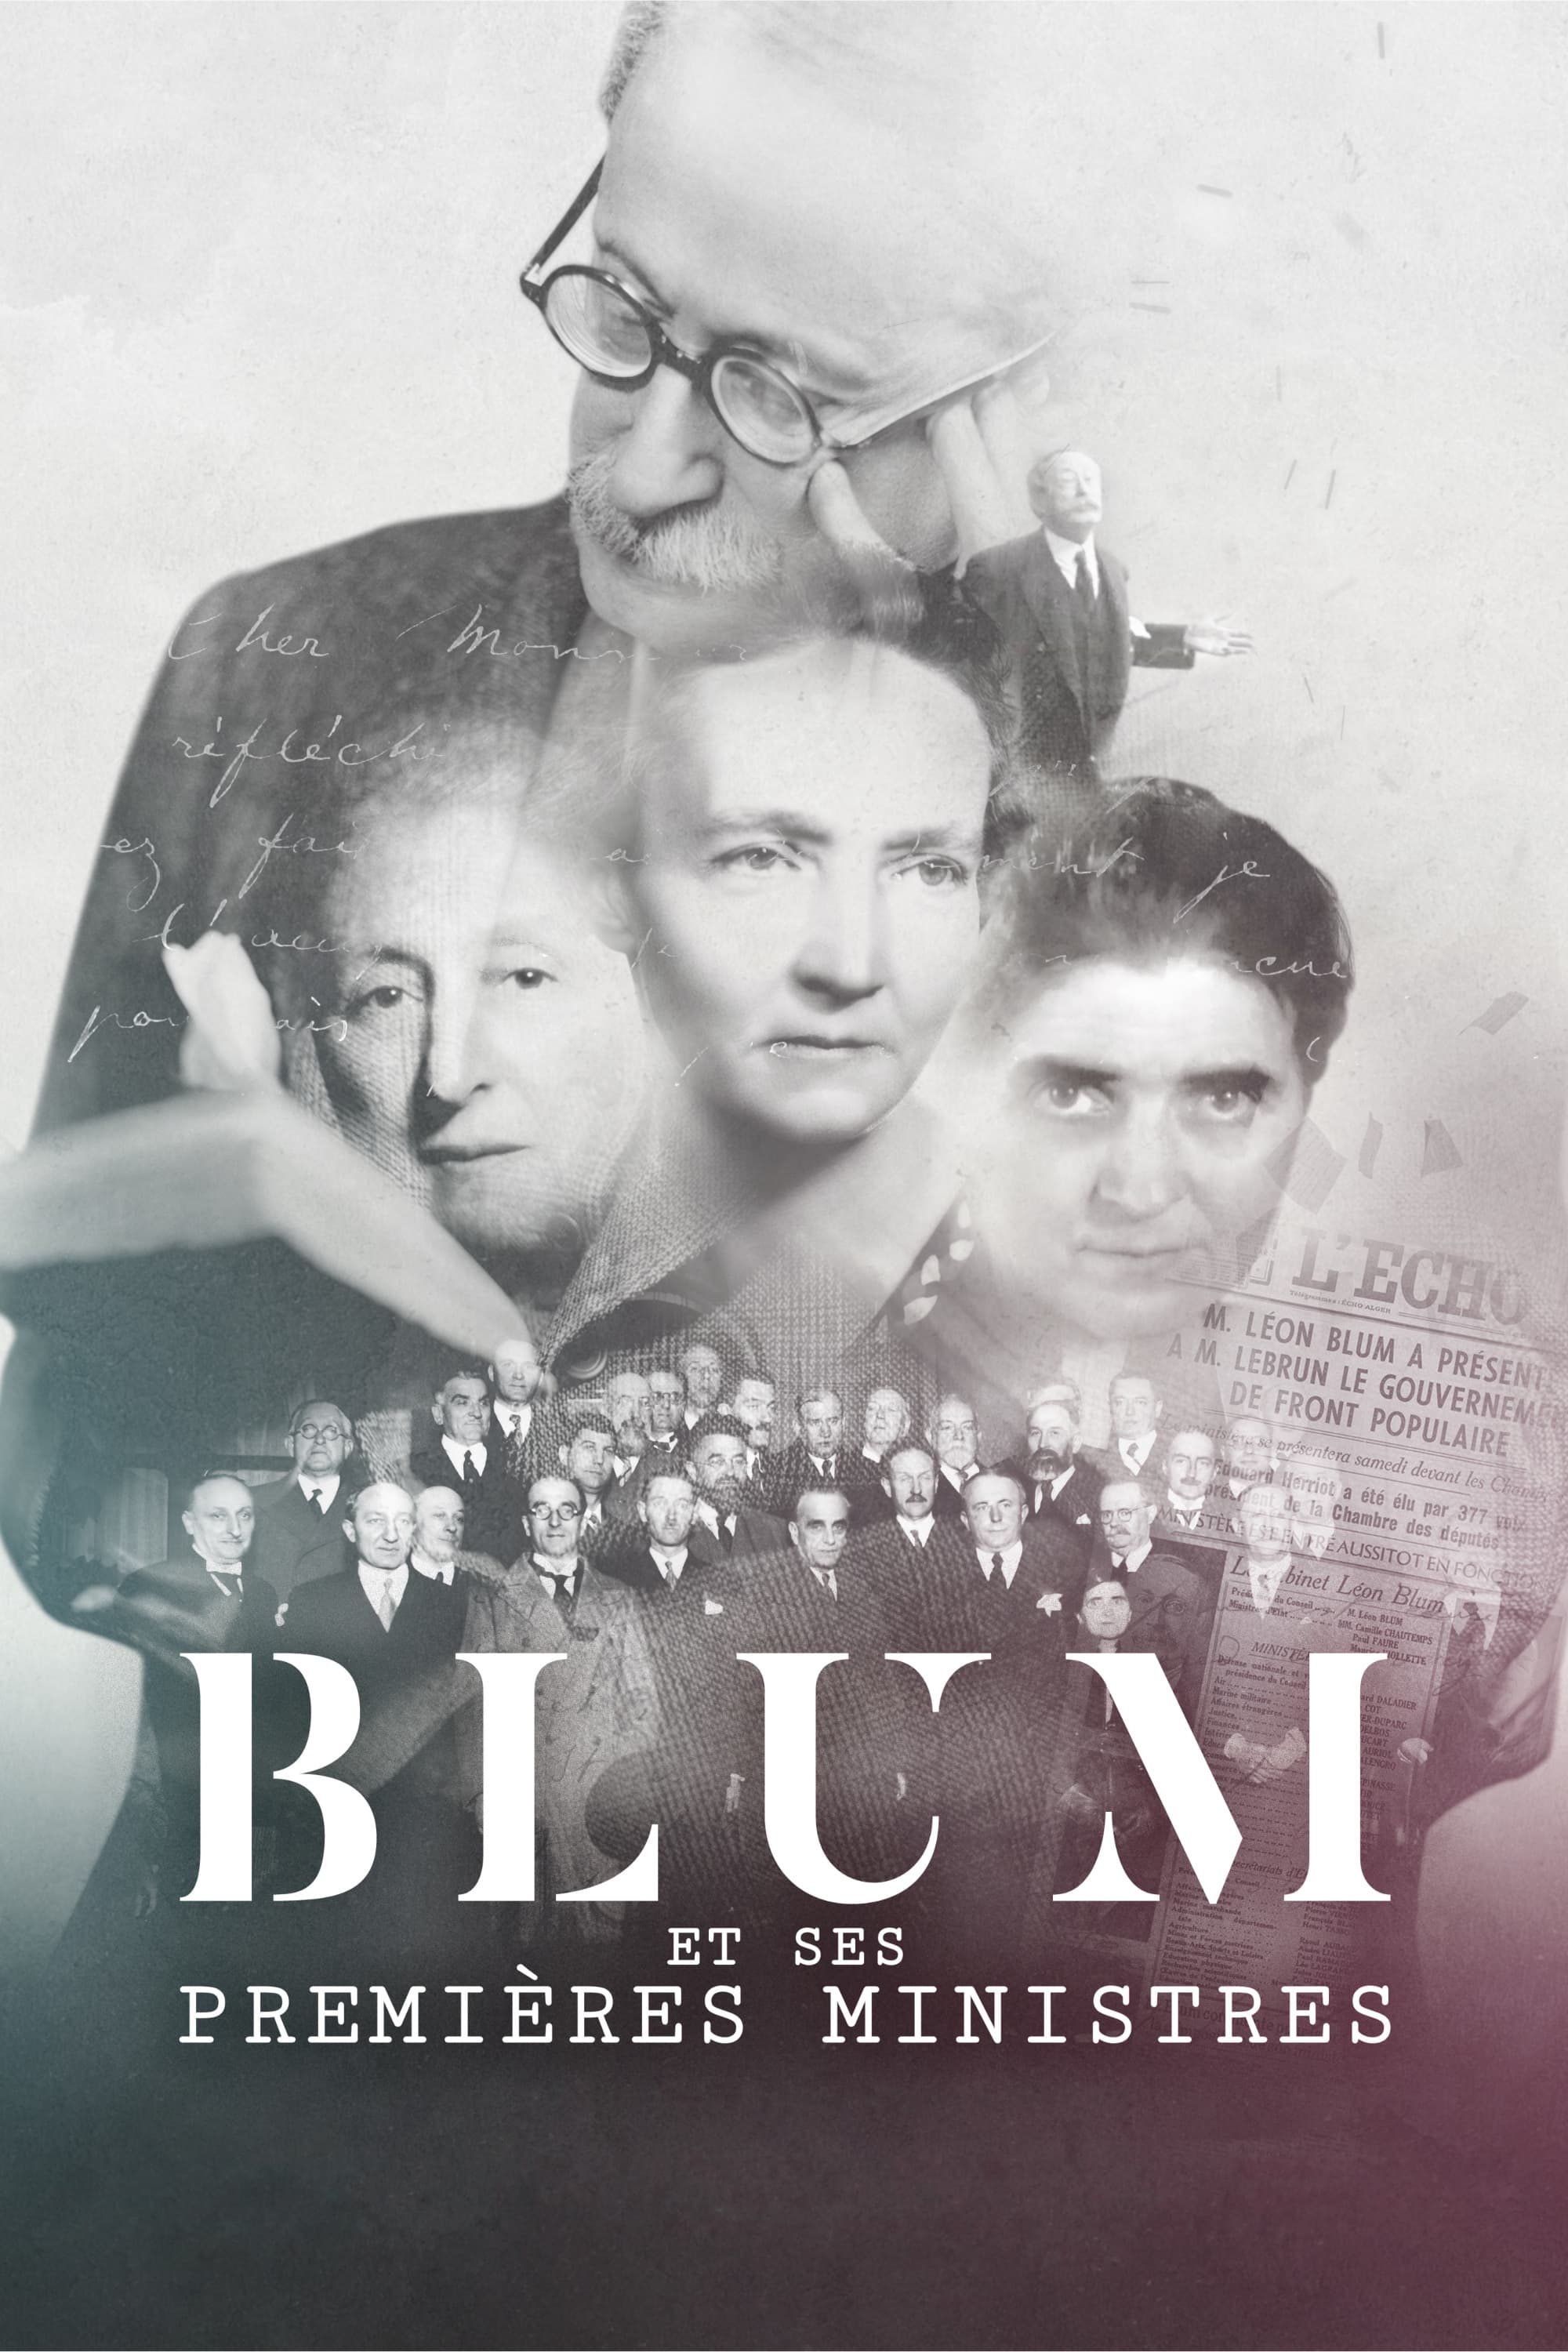 Blum et ses premières ministres